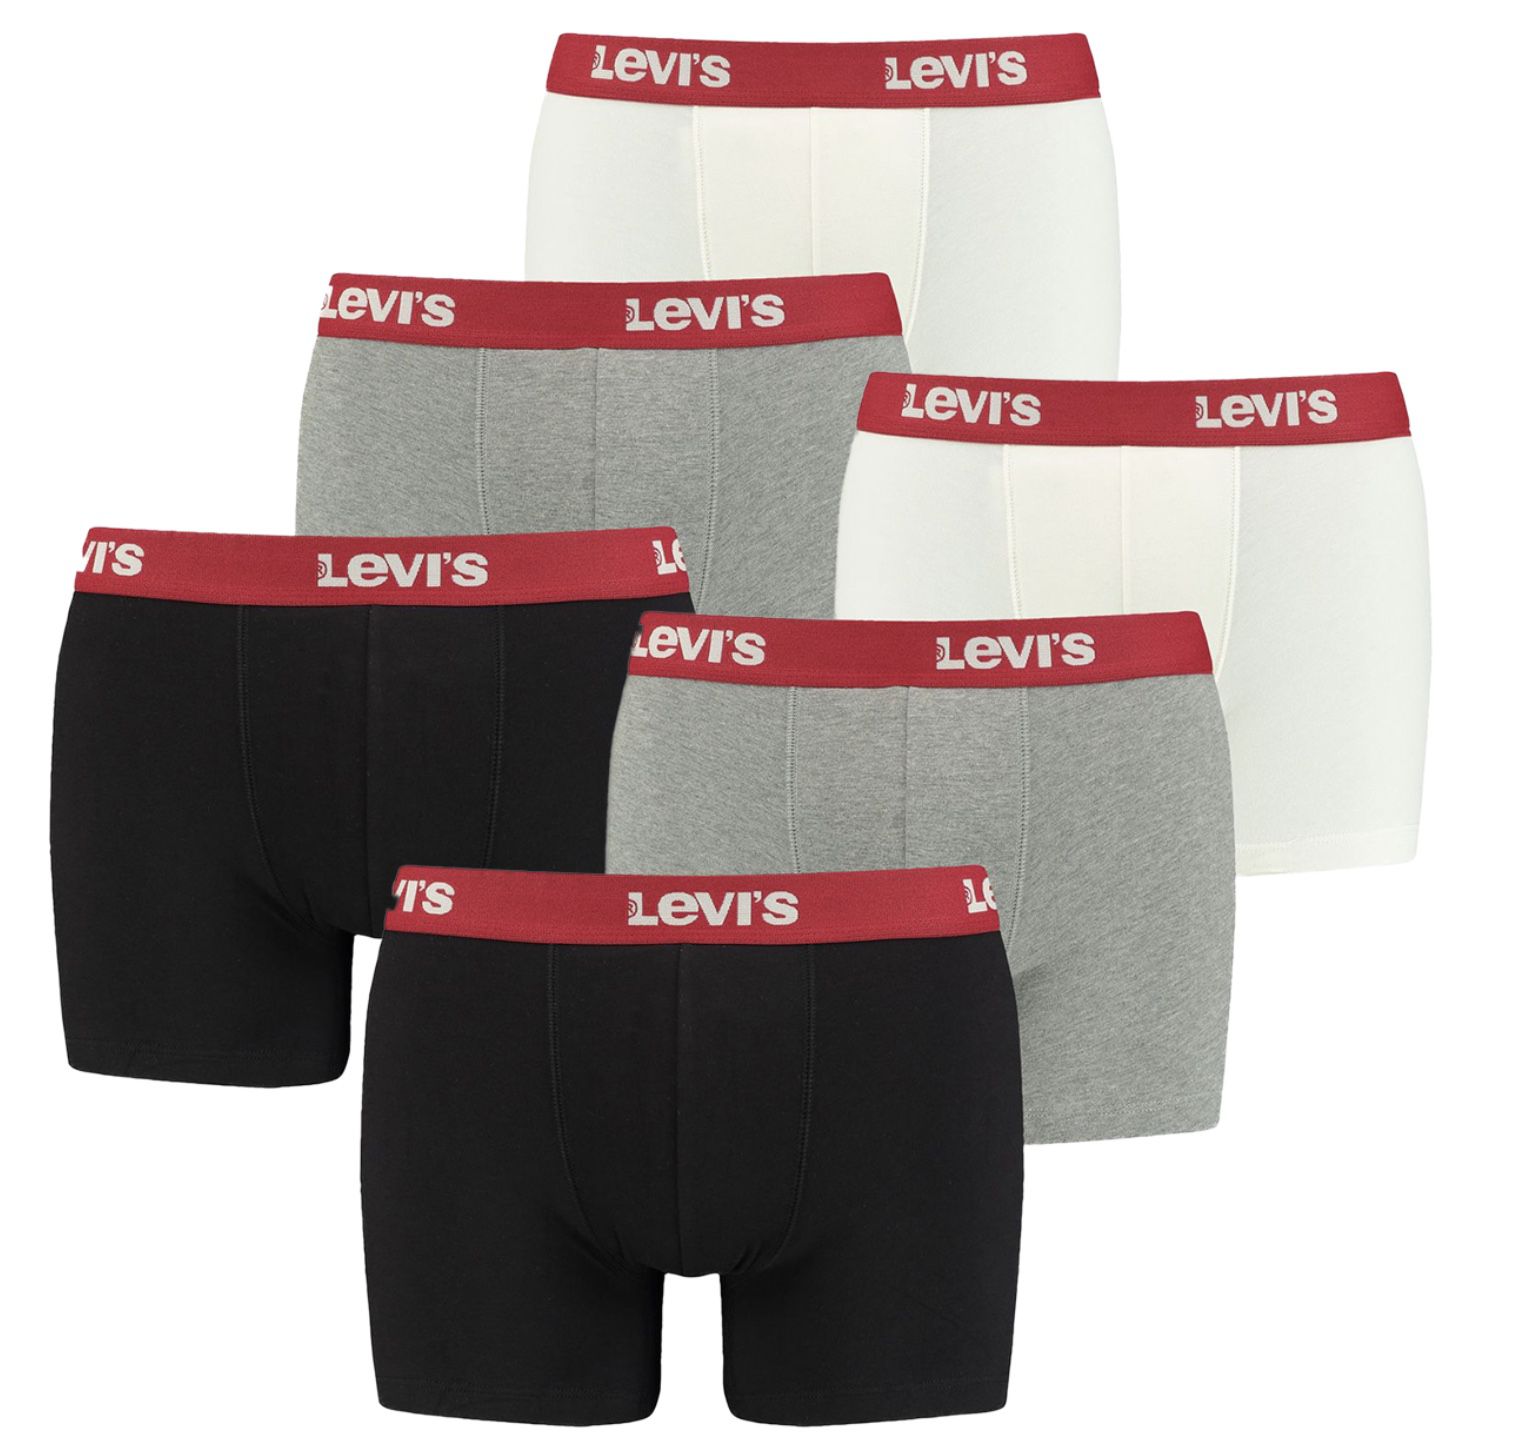 6er Pack Levis Boxershorts in vielen Farben oder gemischt für 33€ (statt 47€) oder 8er Pack für 42€